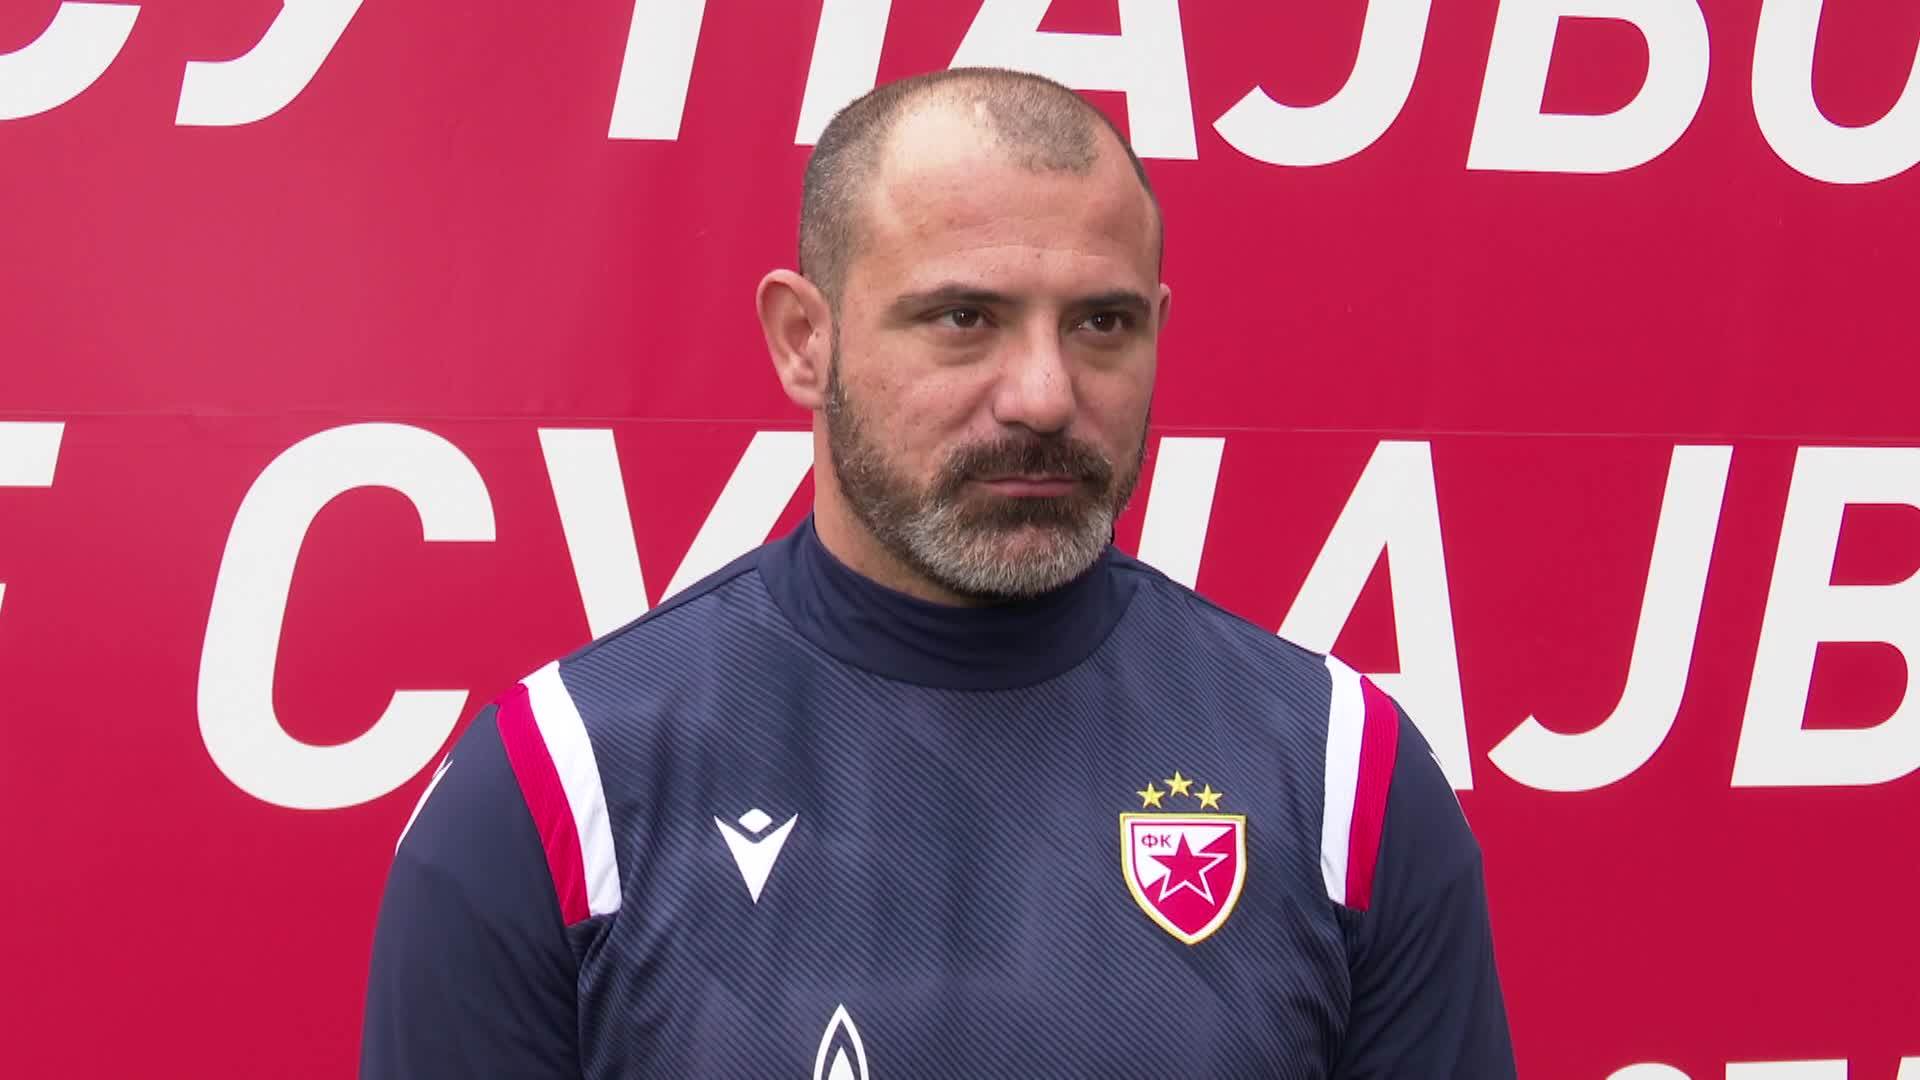  Dejan Stanković San Siro Milan Crvena zvezda 